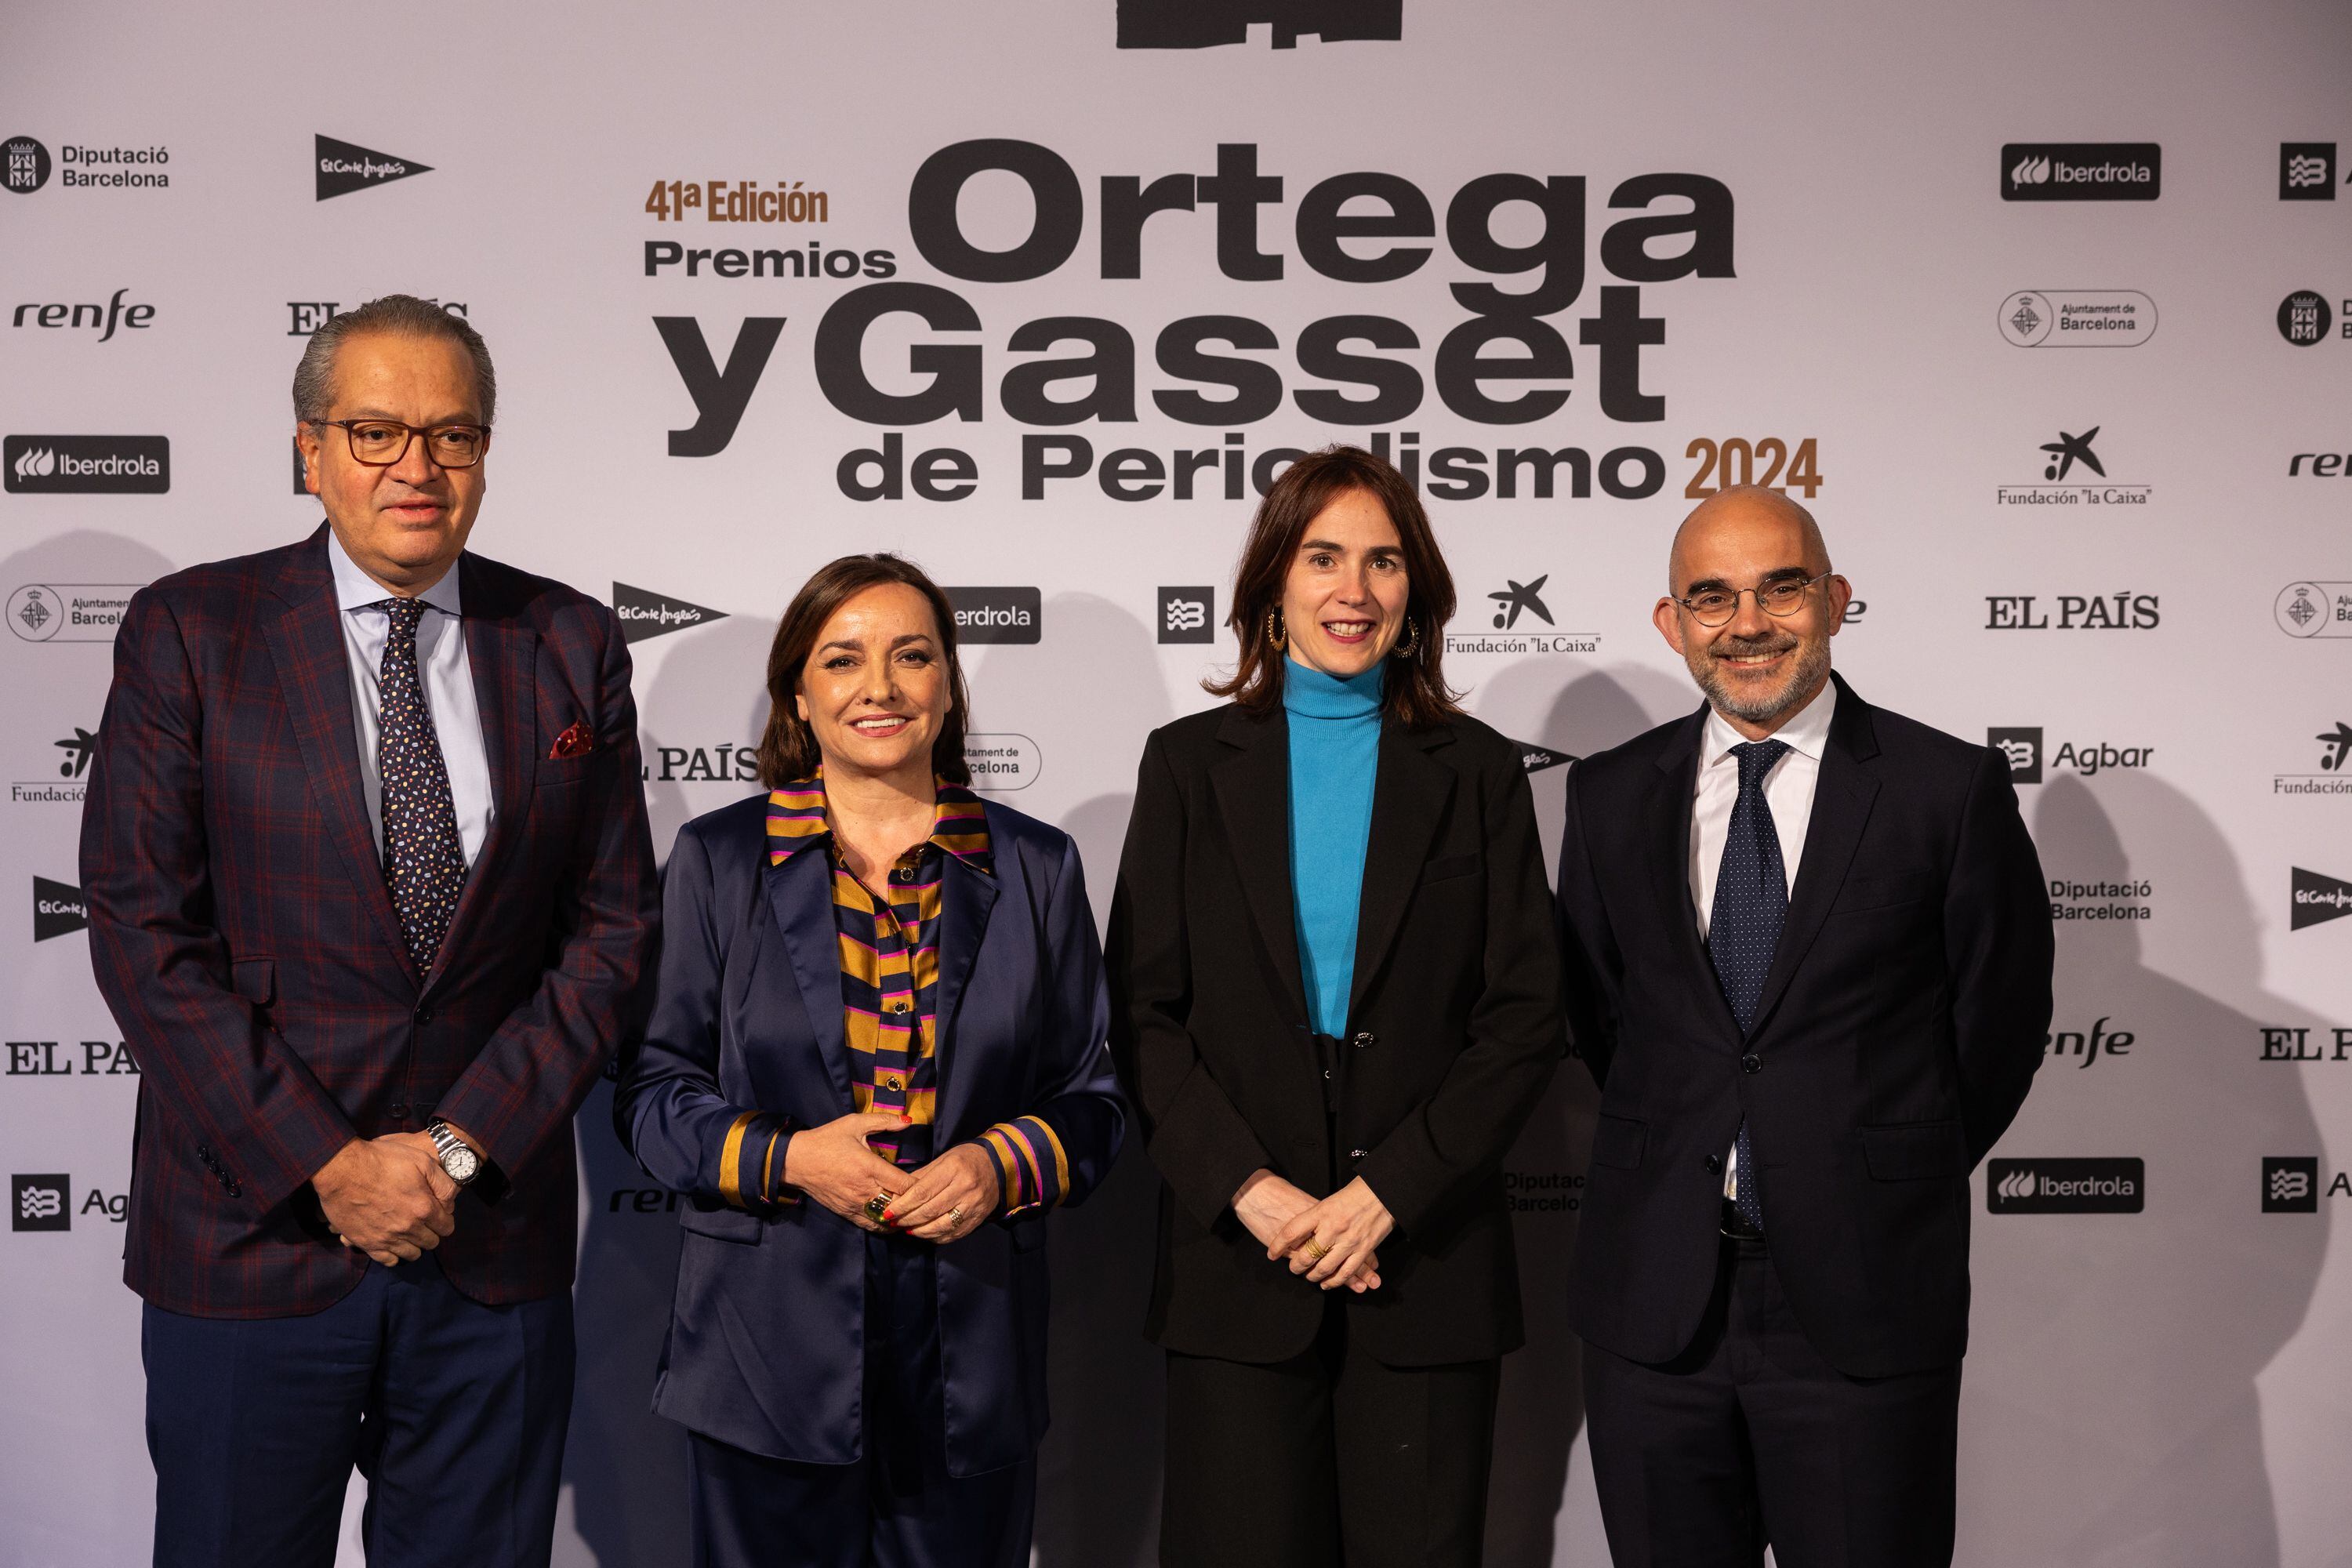 Desde la izquierda, el vicepresidente de PRISA, Fernando Carrillo; la directora de EL PAÍS, Pepa Bueno; la consejera de Justicia de la Generalitat catalana, Gemma Ubasart; y el presidente de PRISA Media, Carlos Núñez.